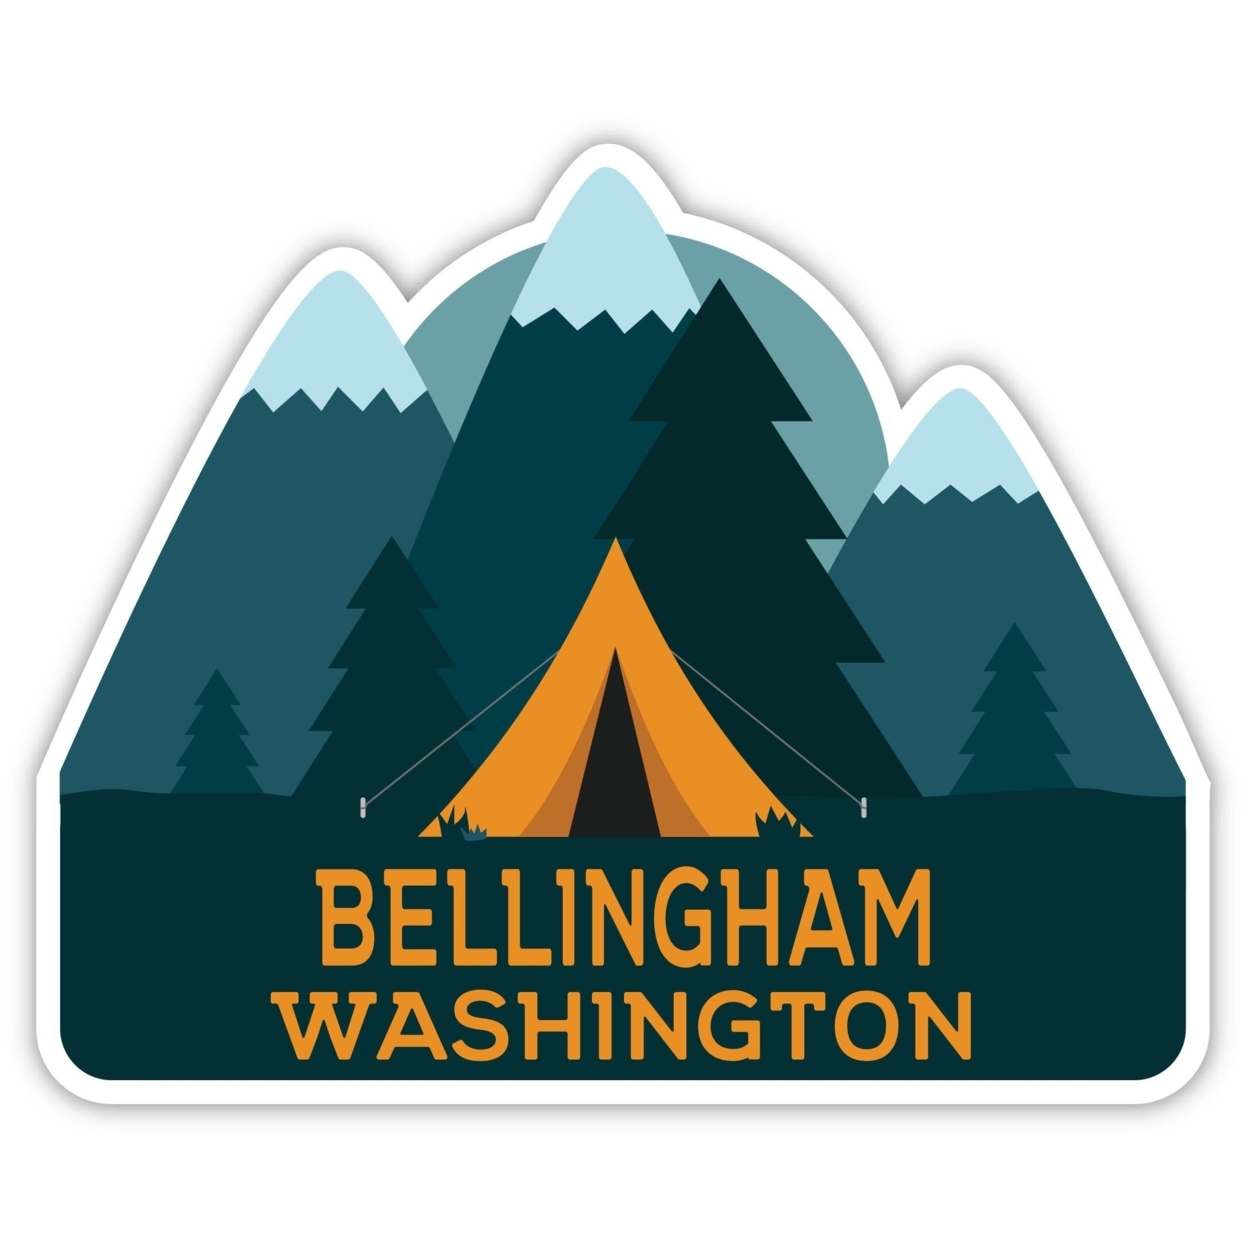 Bellingham Washington Souvenir Decorative Stickers (Choose Theme And Size) - Single Unit, 4-Inch, Adventures Awaits